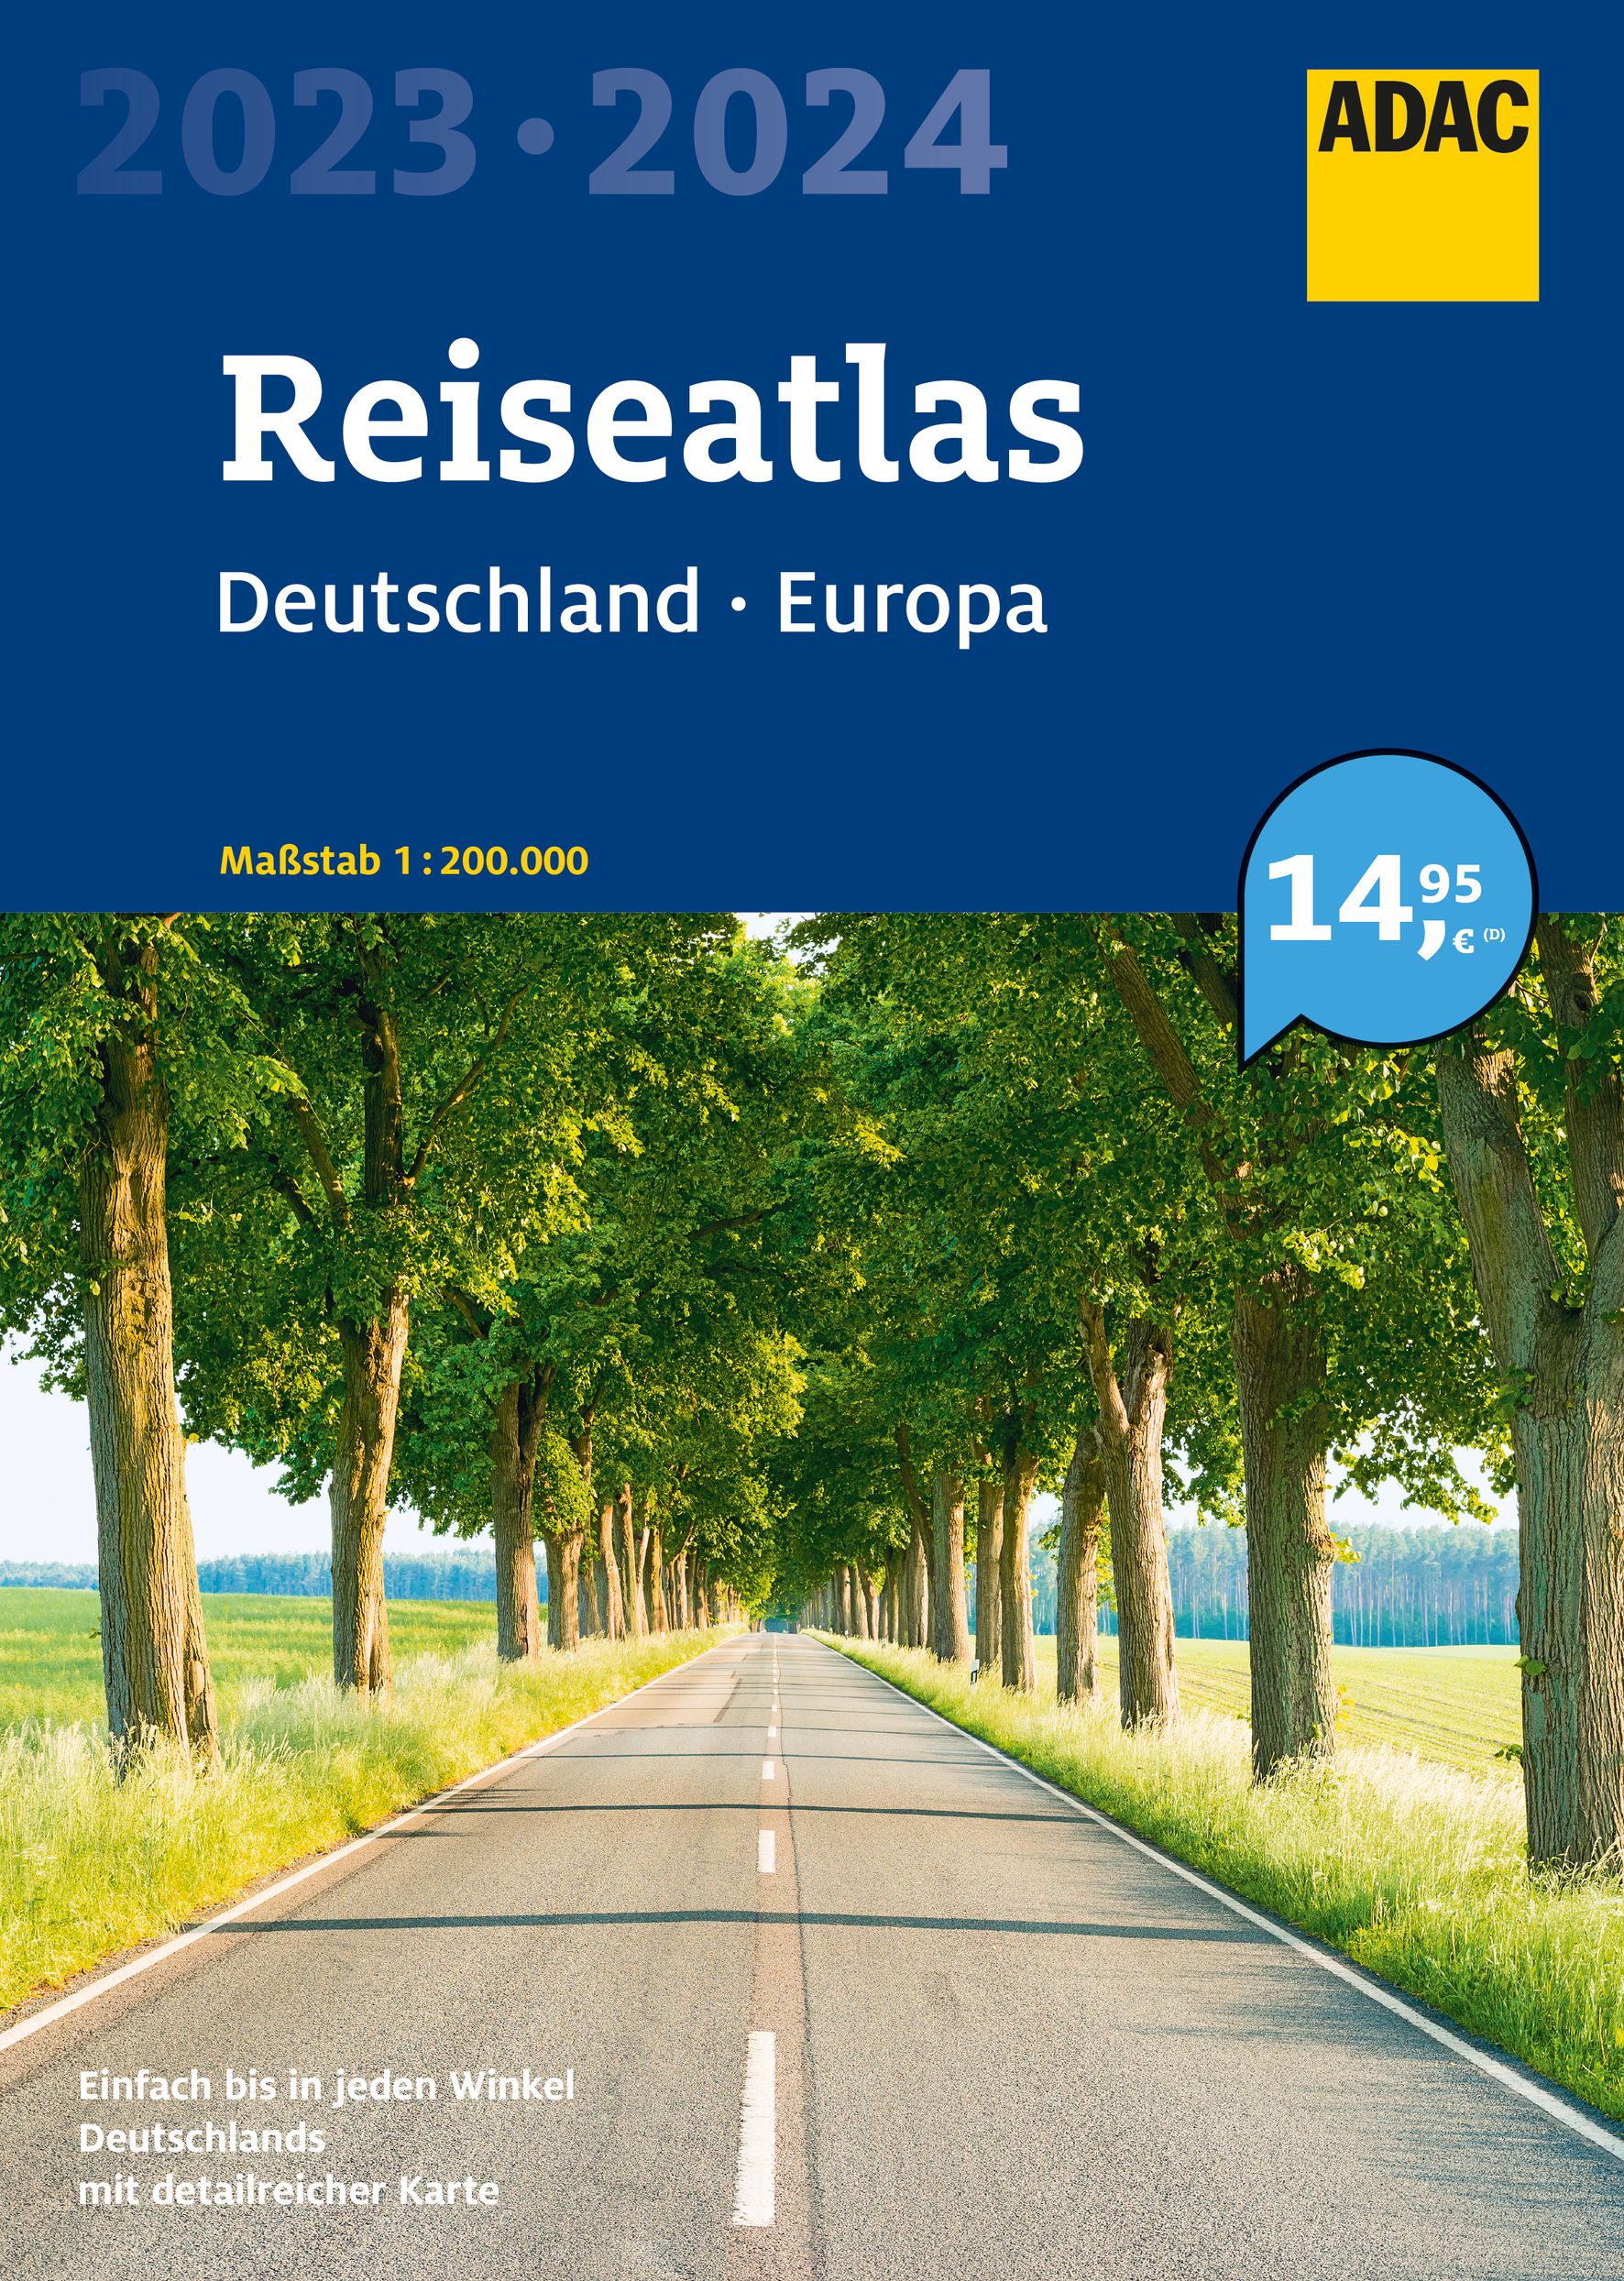 ADAC ADAC Reiseatlas 2023/2024 Deutschland 1:200.000, Europa 1:4,5 Mio.